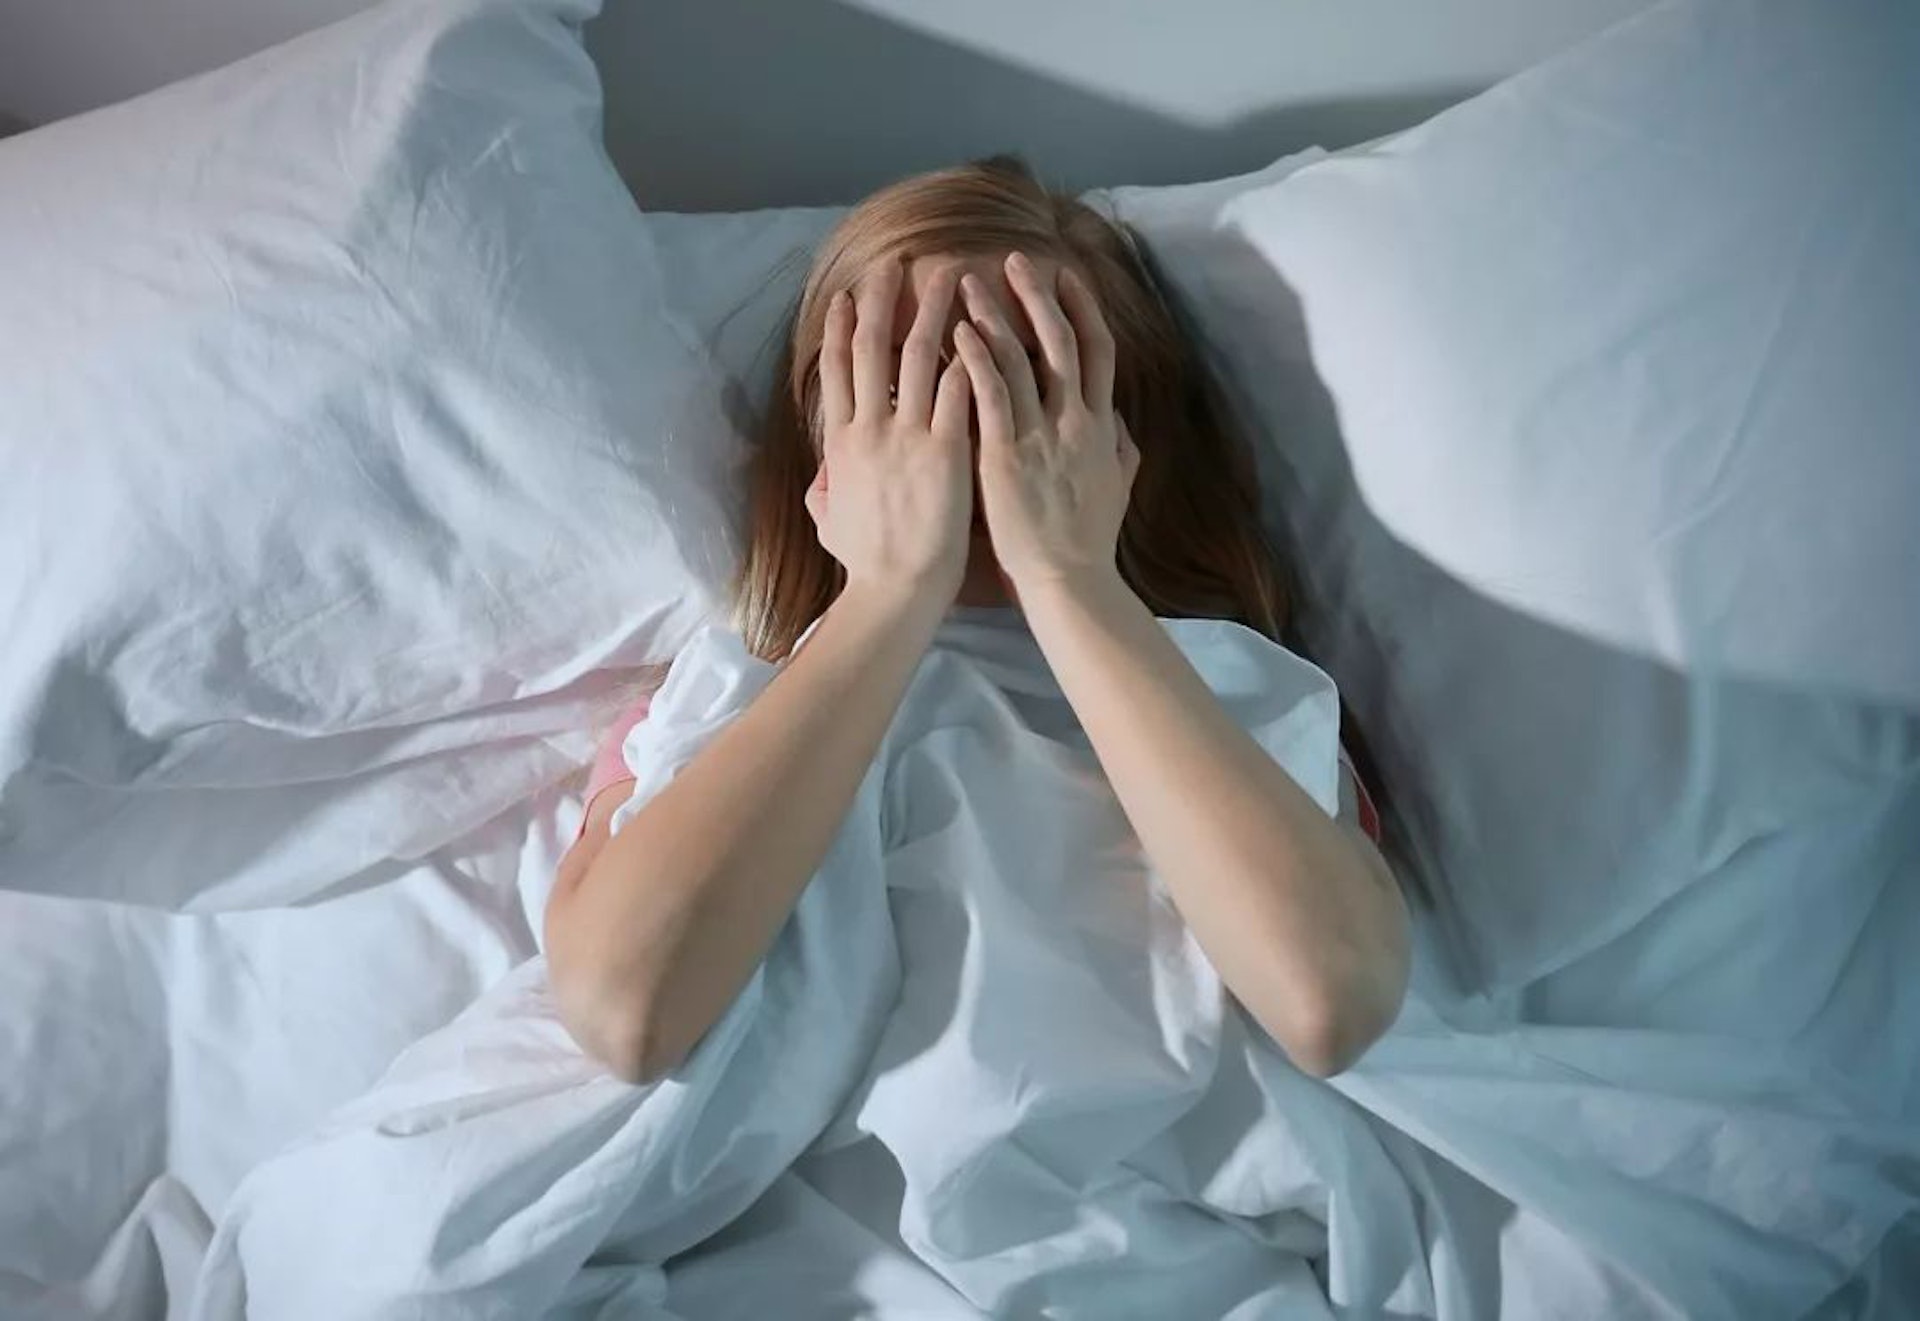 失眠症狀每週超過3次以上，導致白天生活作息及情緒受到影響，其影響時間超過3個月，便就構成臨床上的「失眠症」。（資料圖片）